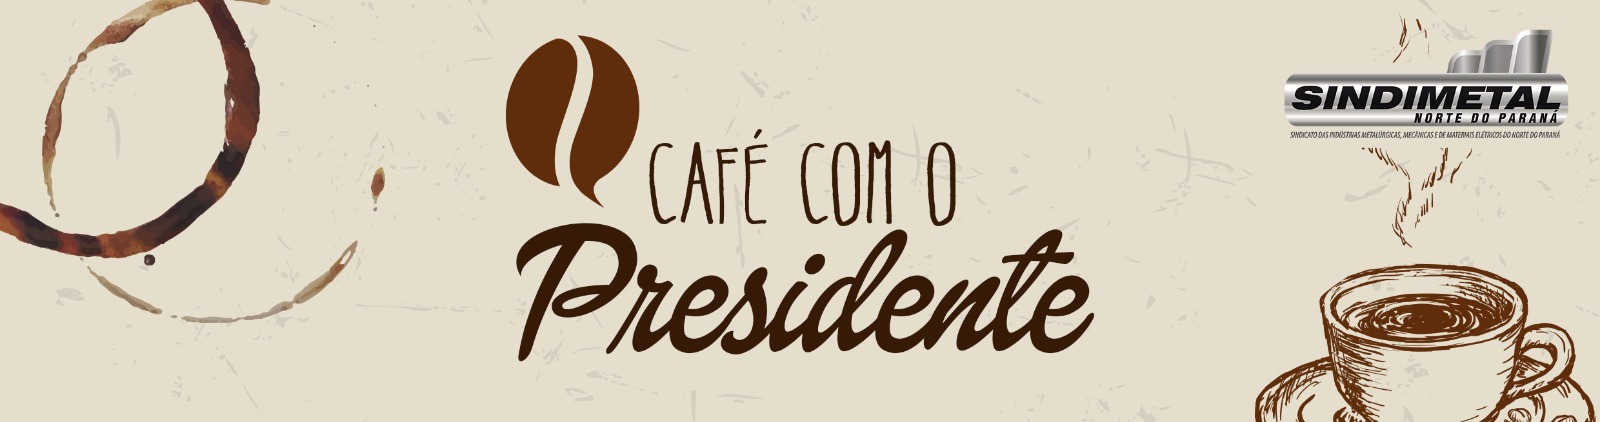 PALESTRA AMANHÃ NO CAFÉ INOVEMM, MOSTRA COMO AS INDÚSTRIAS DA REGIÃO PODEM EXPORTAR E CONSEGUIR NOVOS MERCADOS